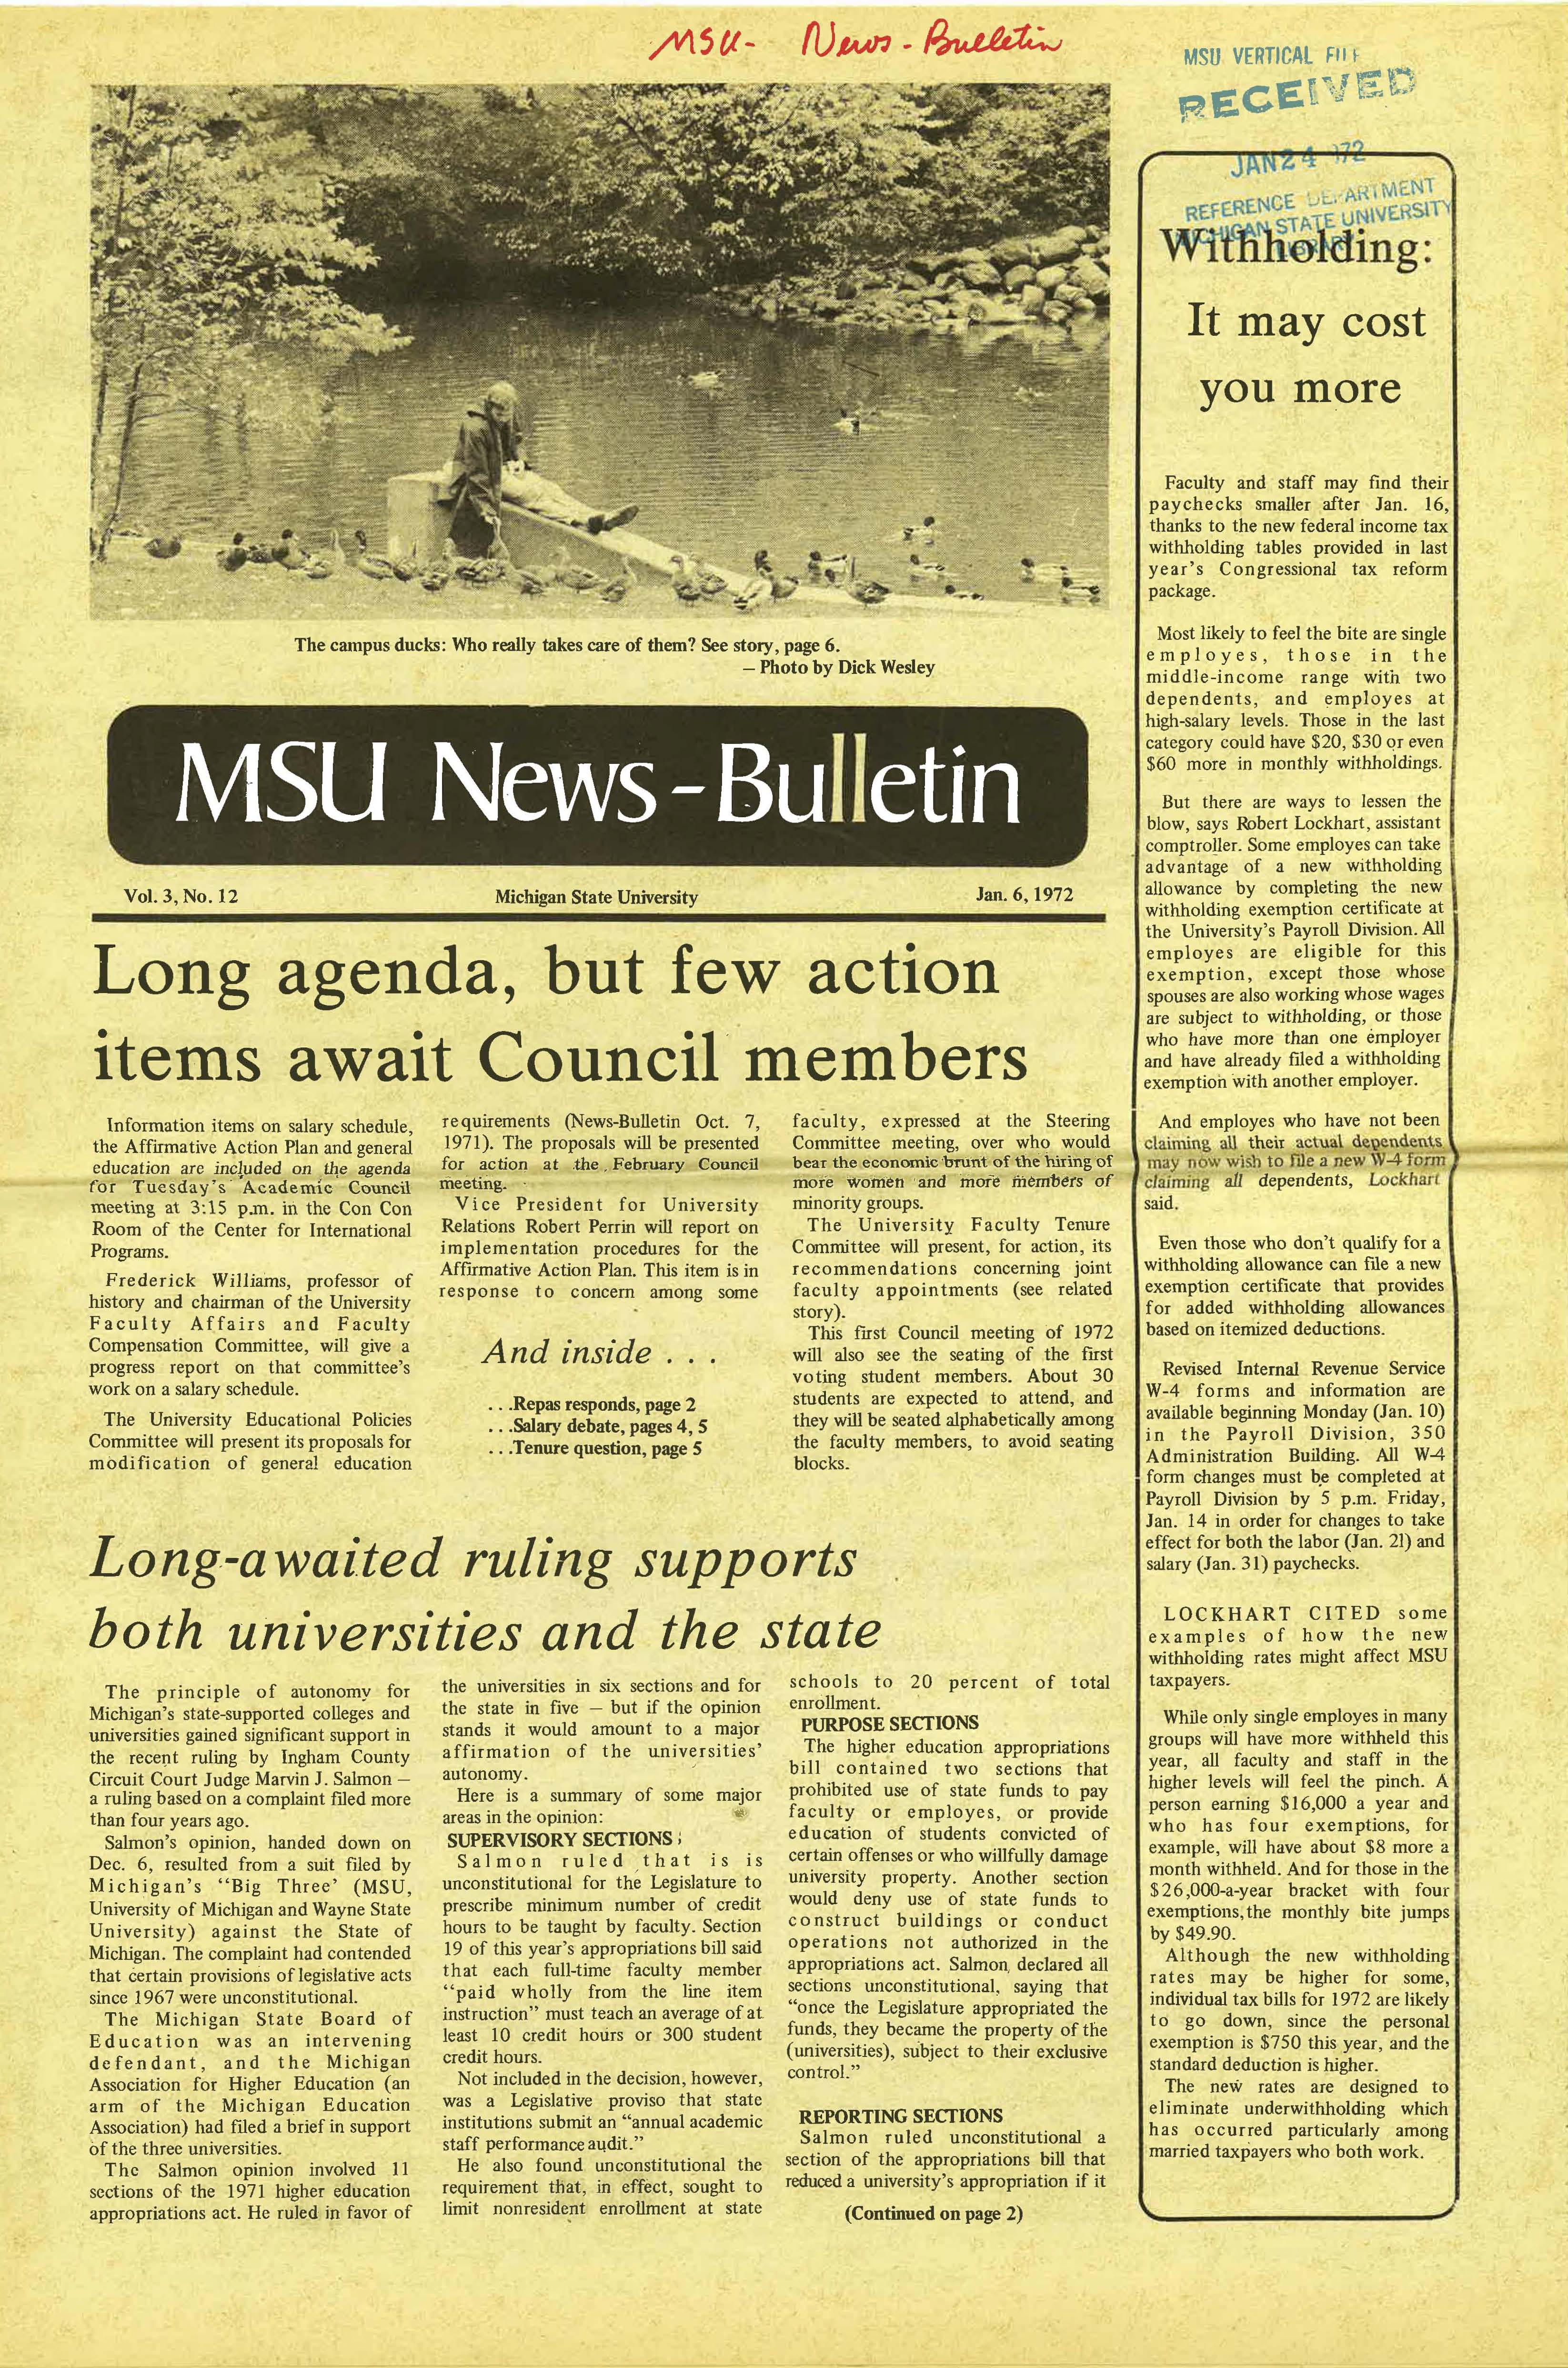 MSU News Bulletin, vol. 3, No. 25, April 20, 1972